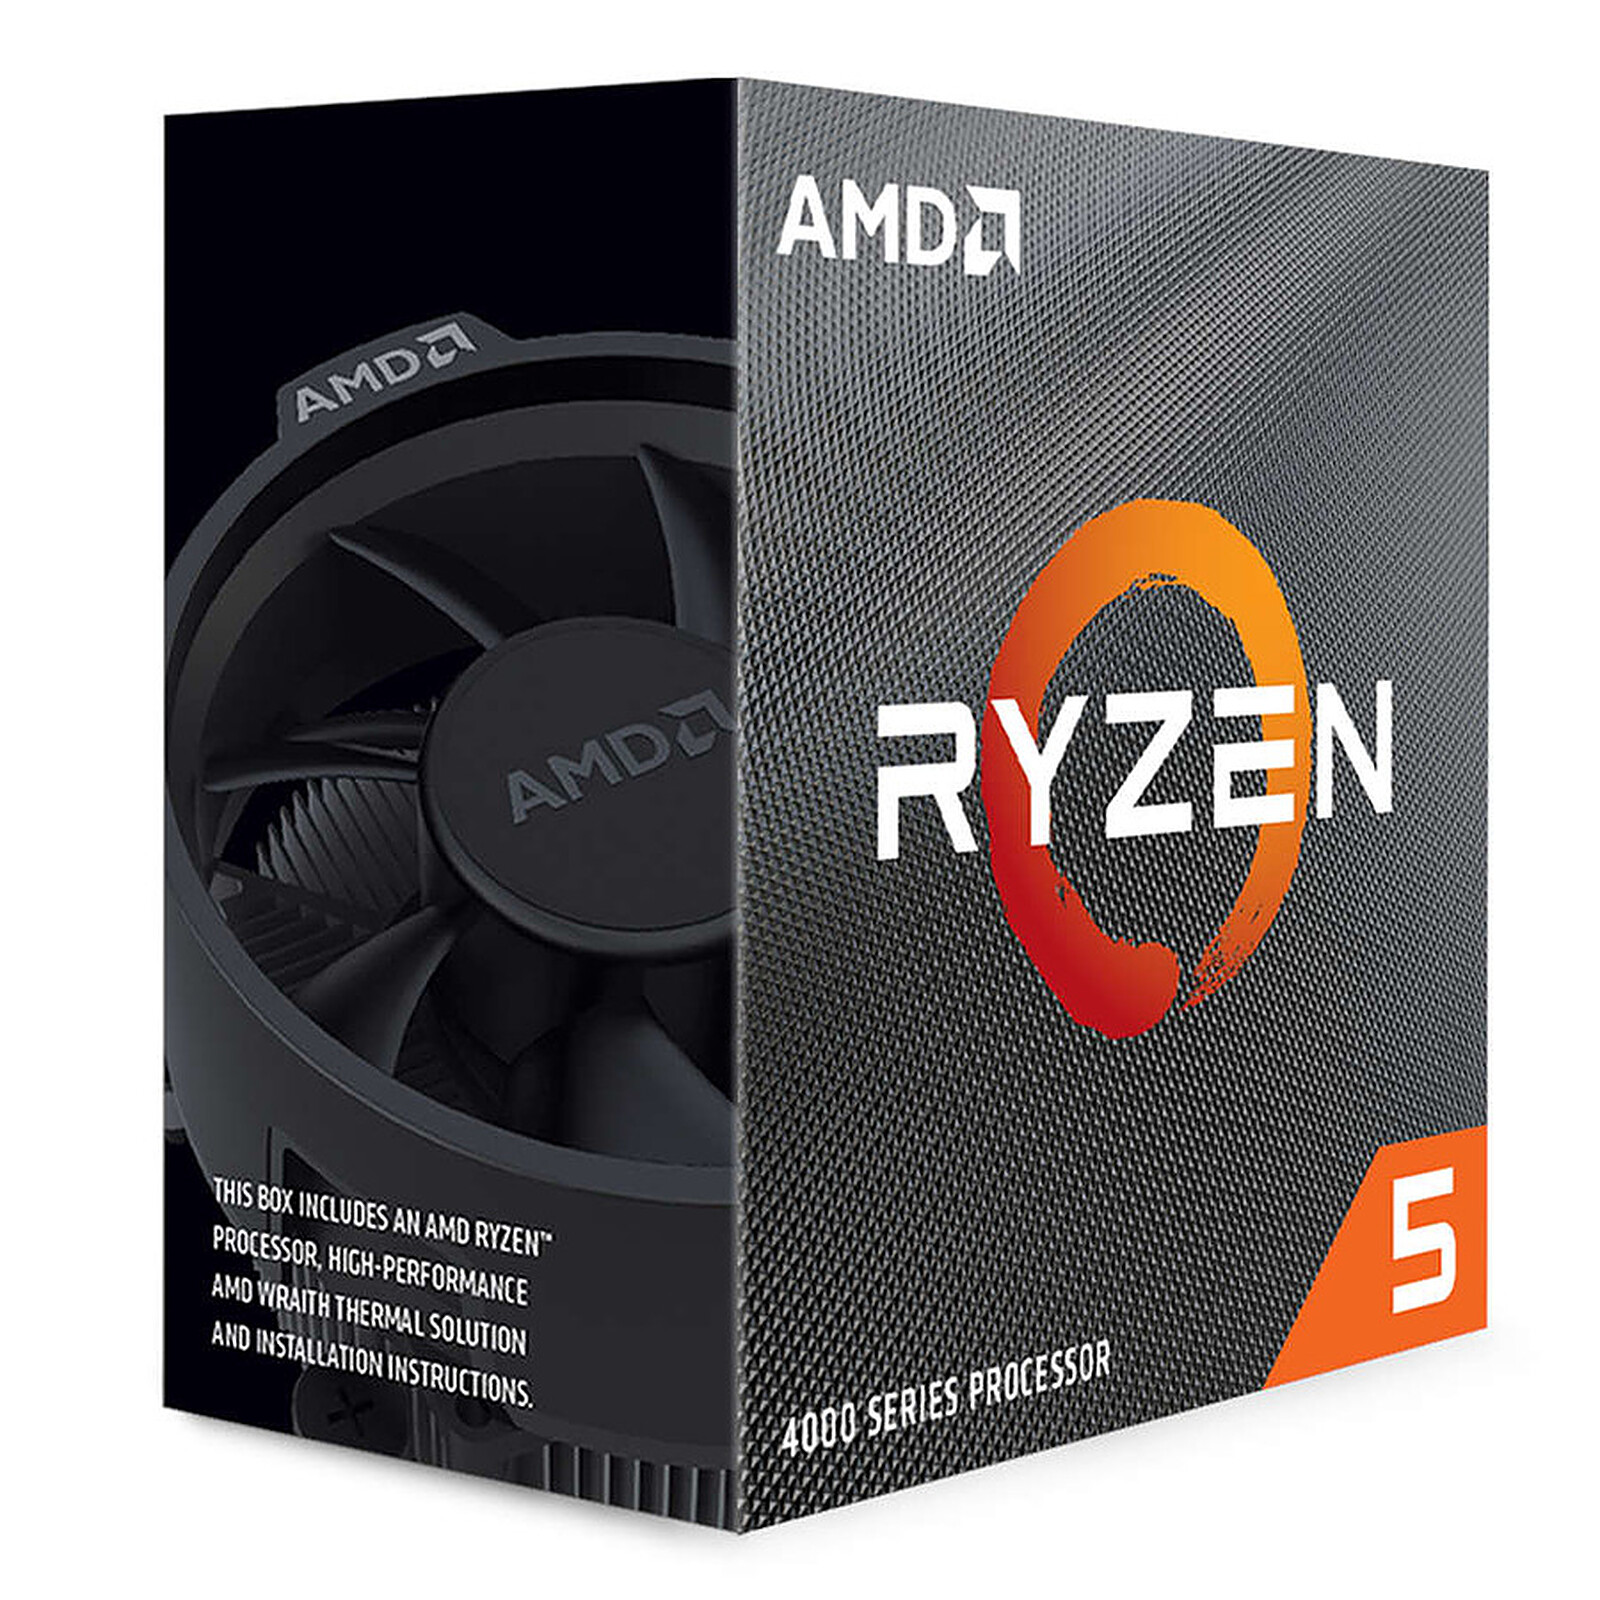 CPU AMD AM4 RYZEN 5 4500